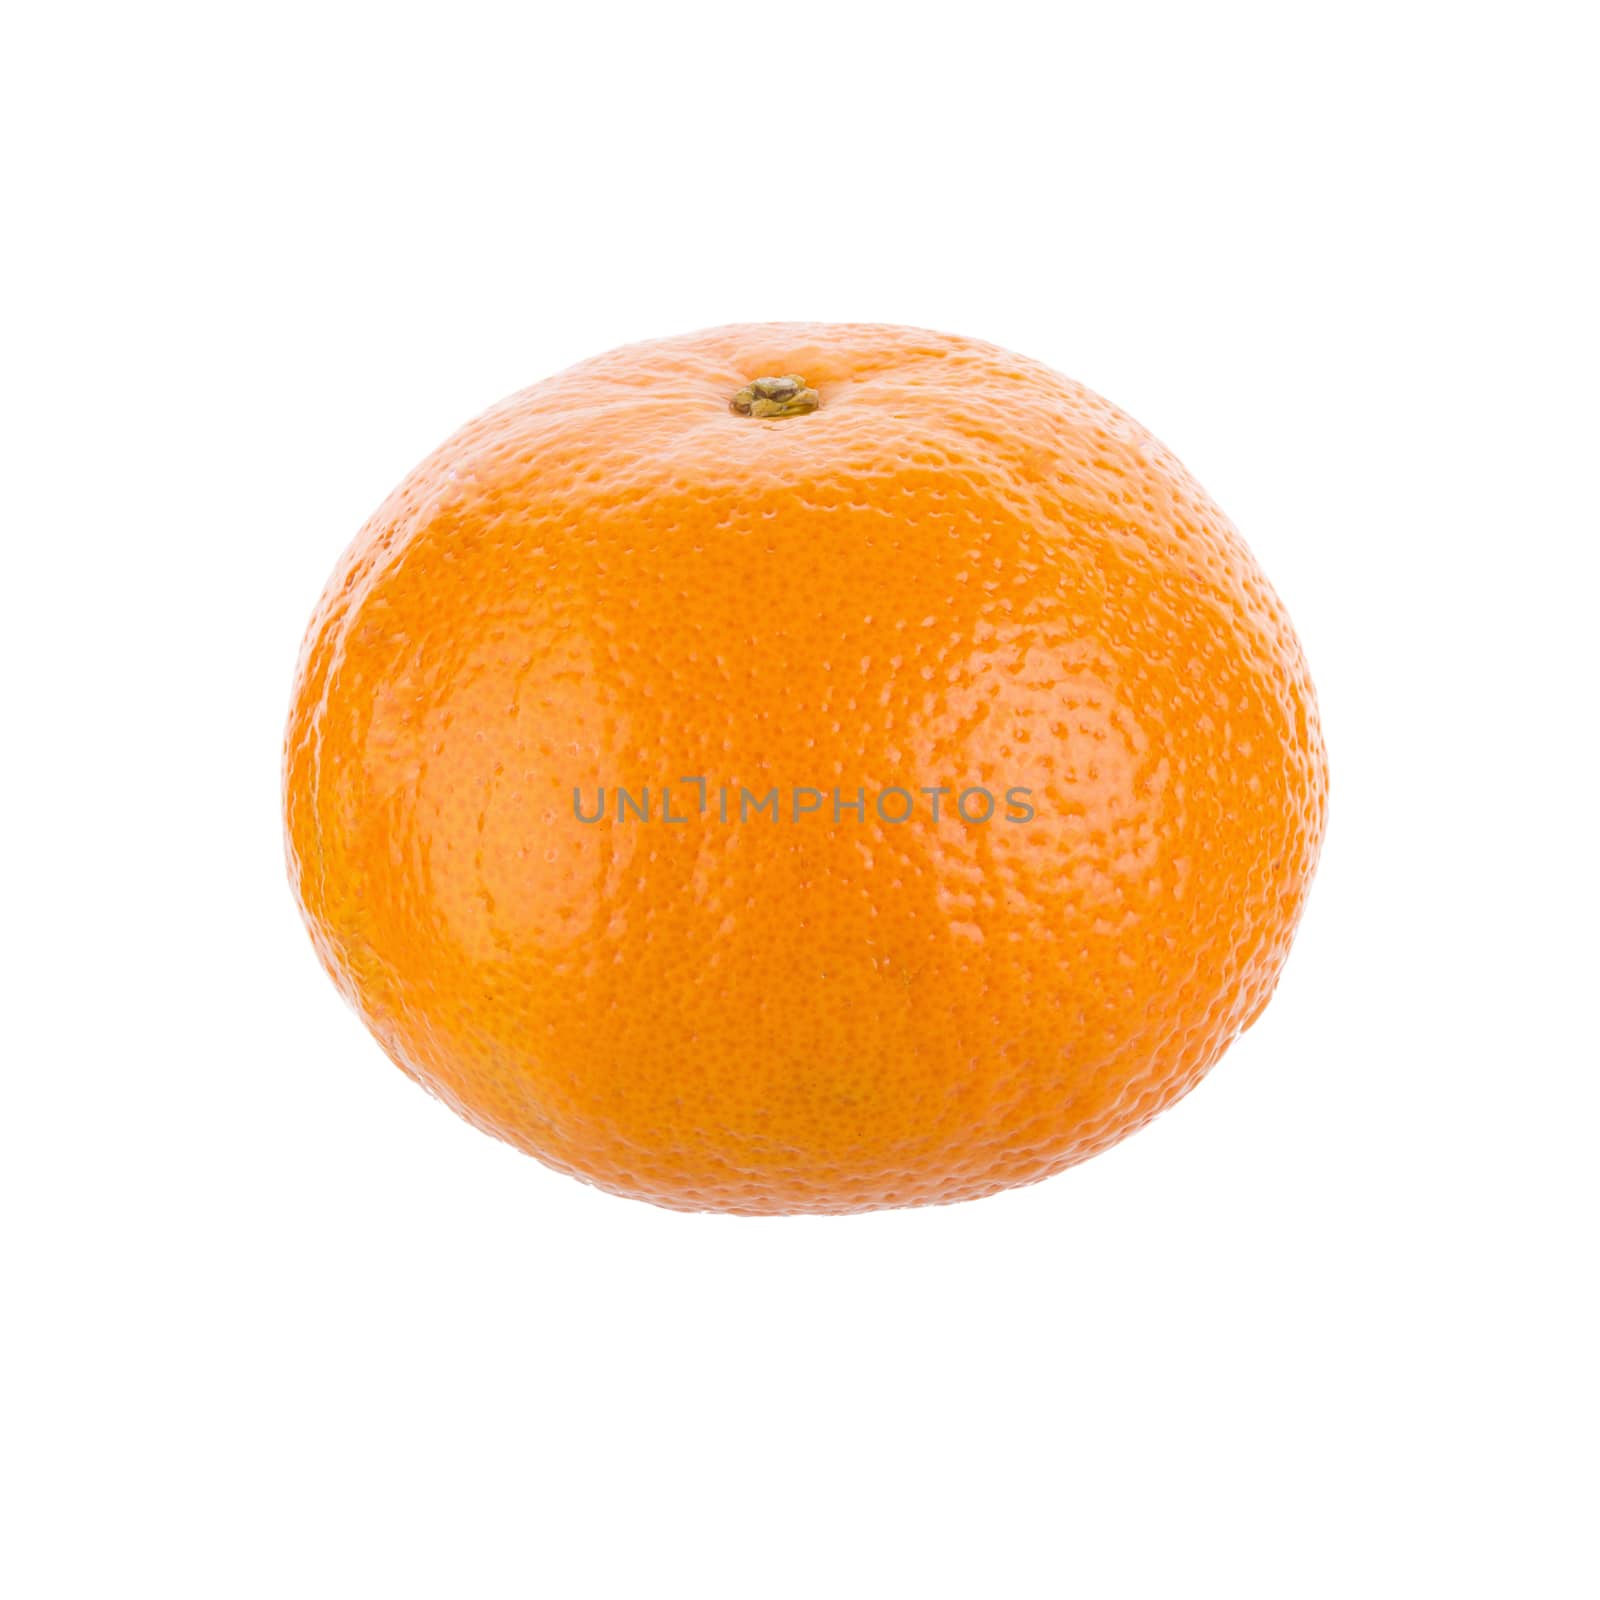 fresh orange fruit isolated on white background.